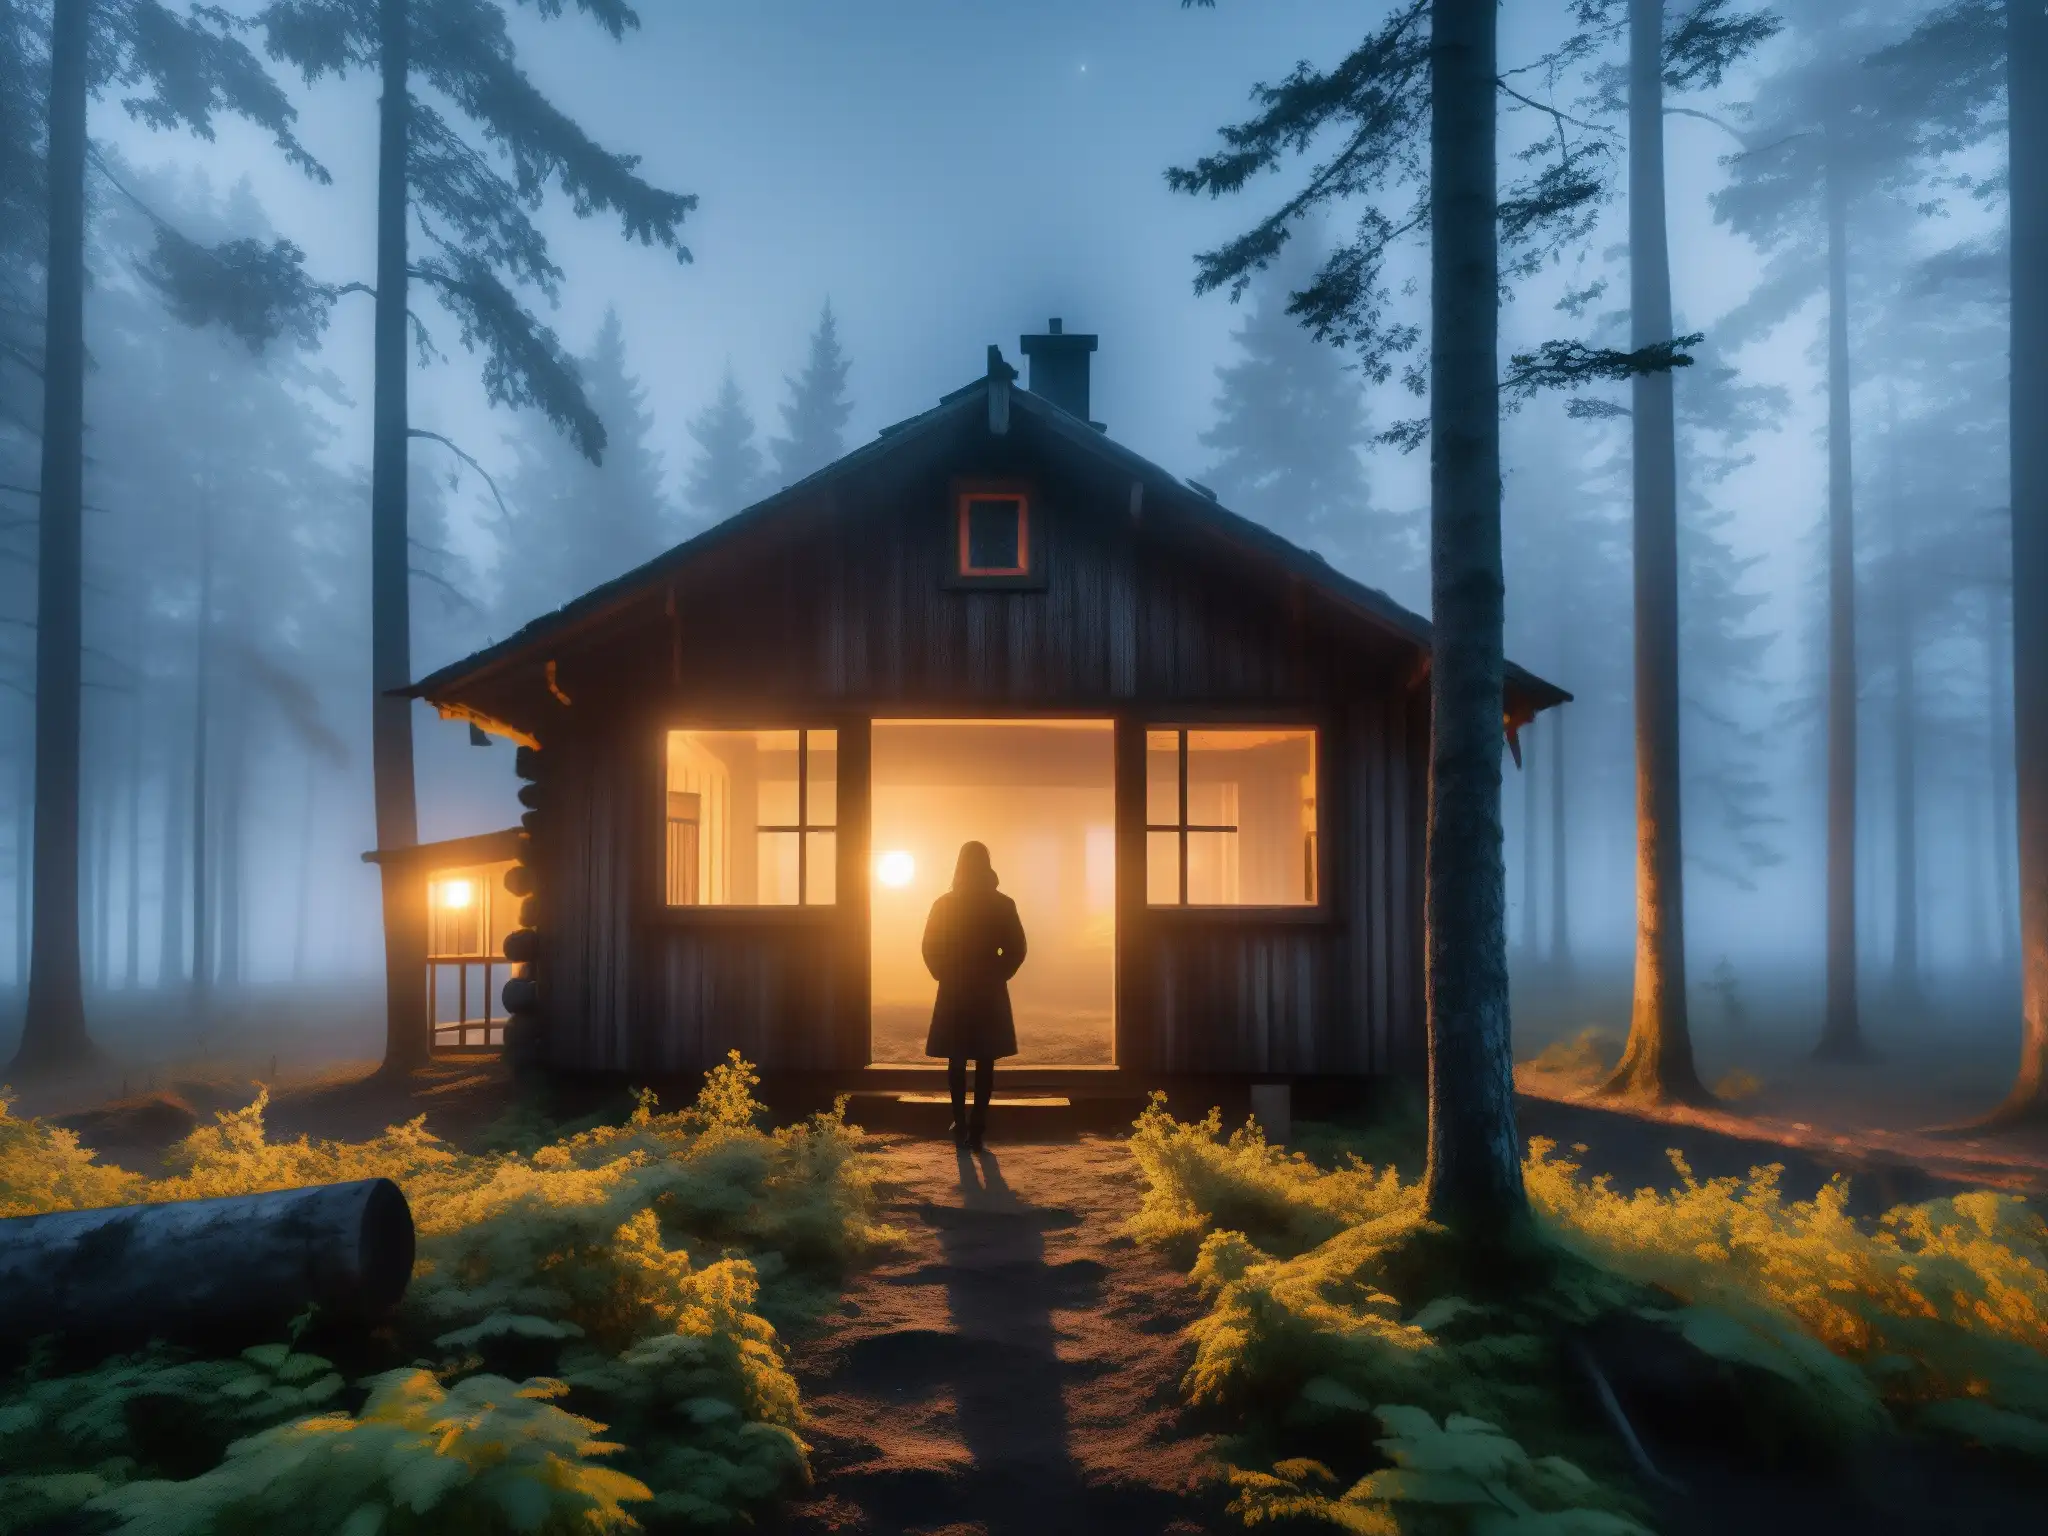 Misterioso bosque finlandés iluminado por la luna, con una casa antigua y una figura en la ventana